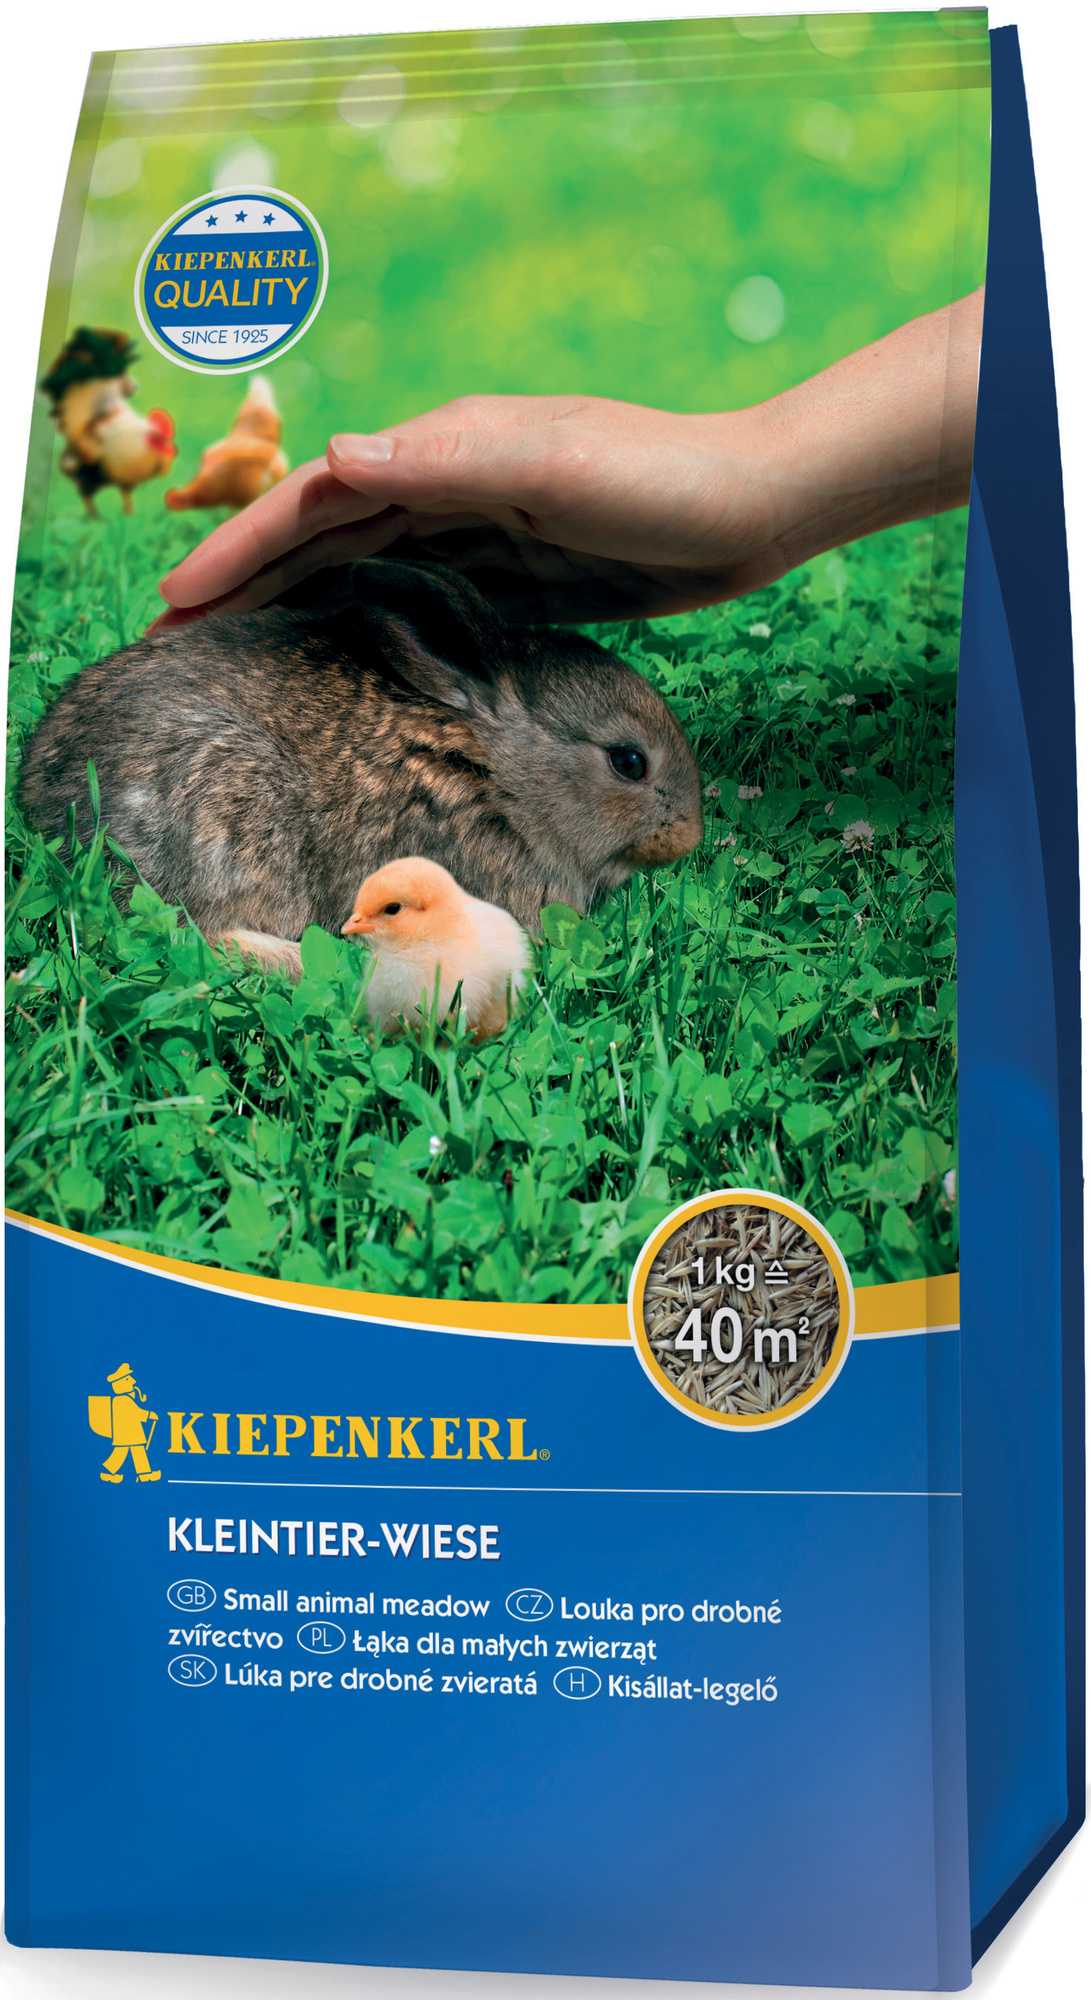 Kiepenkerl Kleintier-Wiese, 1 kg